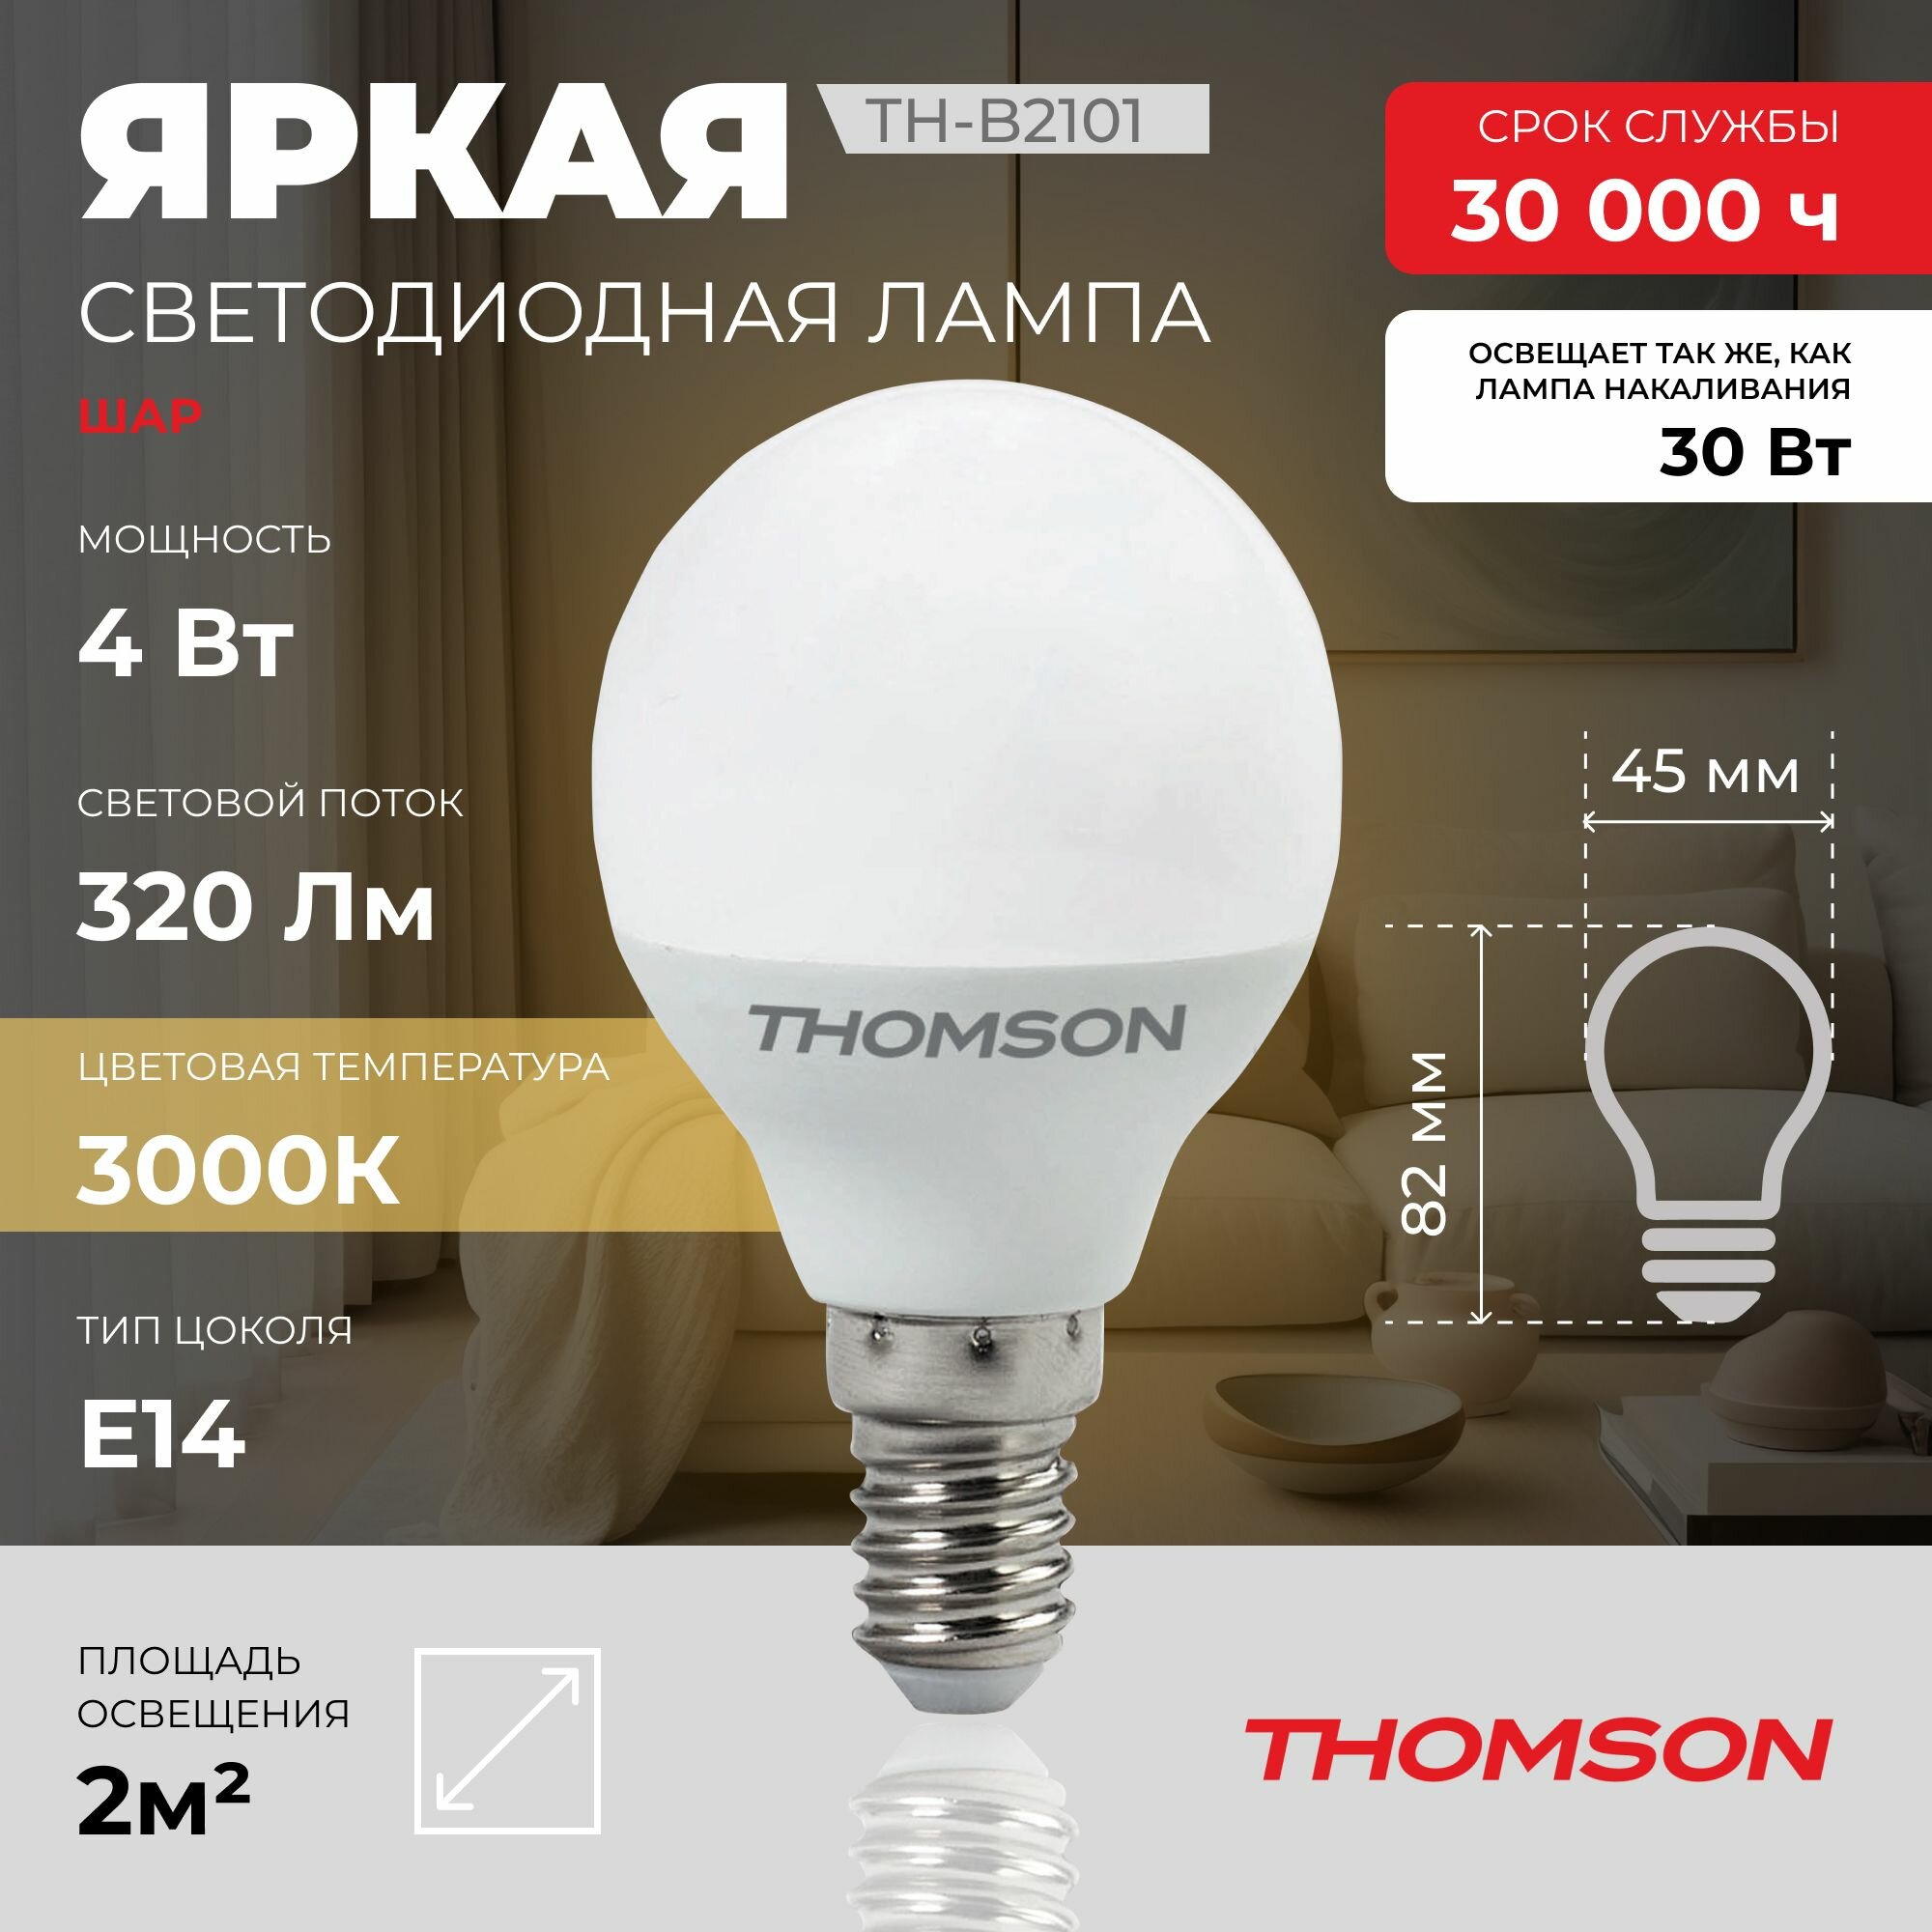 Лампочка Thomson TH-B2101 4 Вт, E14, 3000K, шар, теплый белый свет